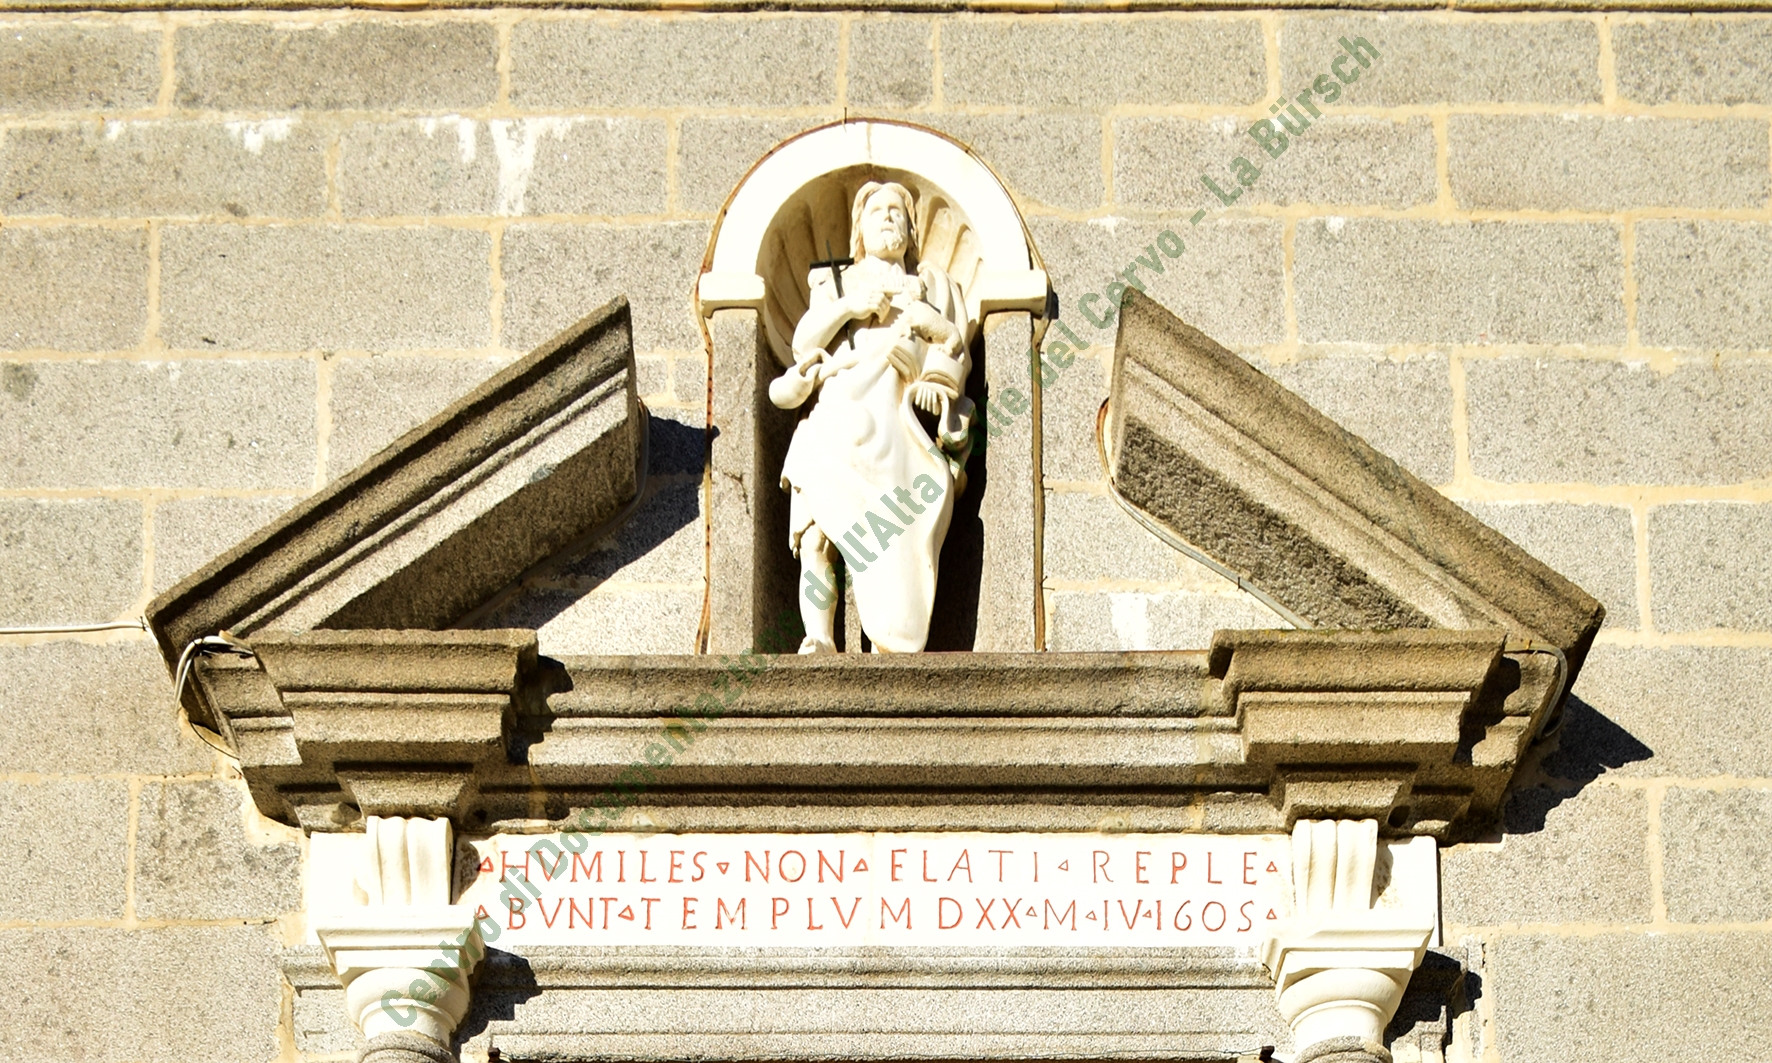 Il timpano spezzato che sormonta il portale della chiesa di San Giovanni d’Andorno: la statua del Battista e la facciata di pietra rappresentano l’esordio del Barocco nella Bürsch